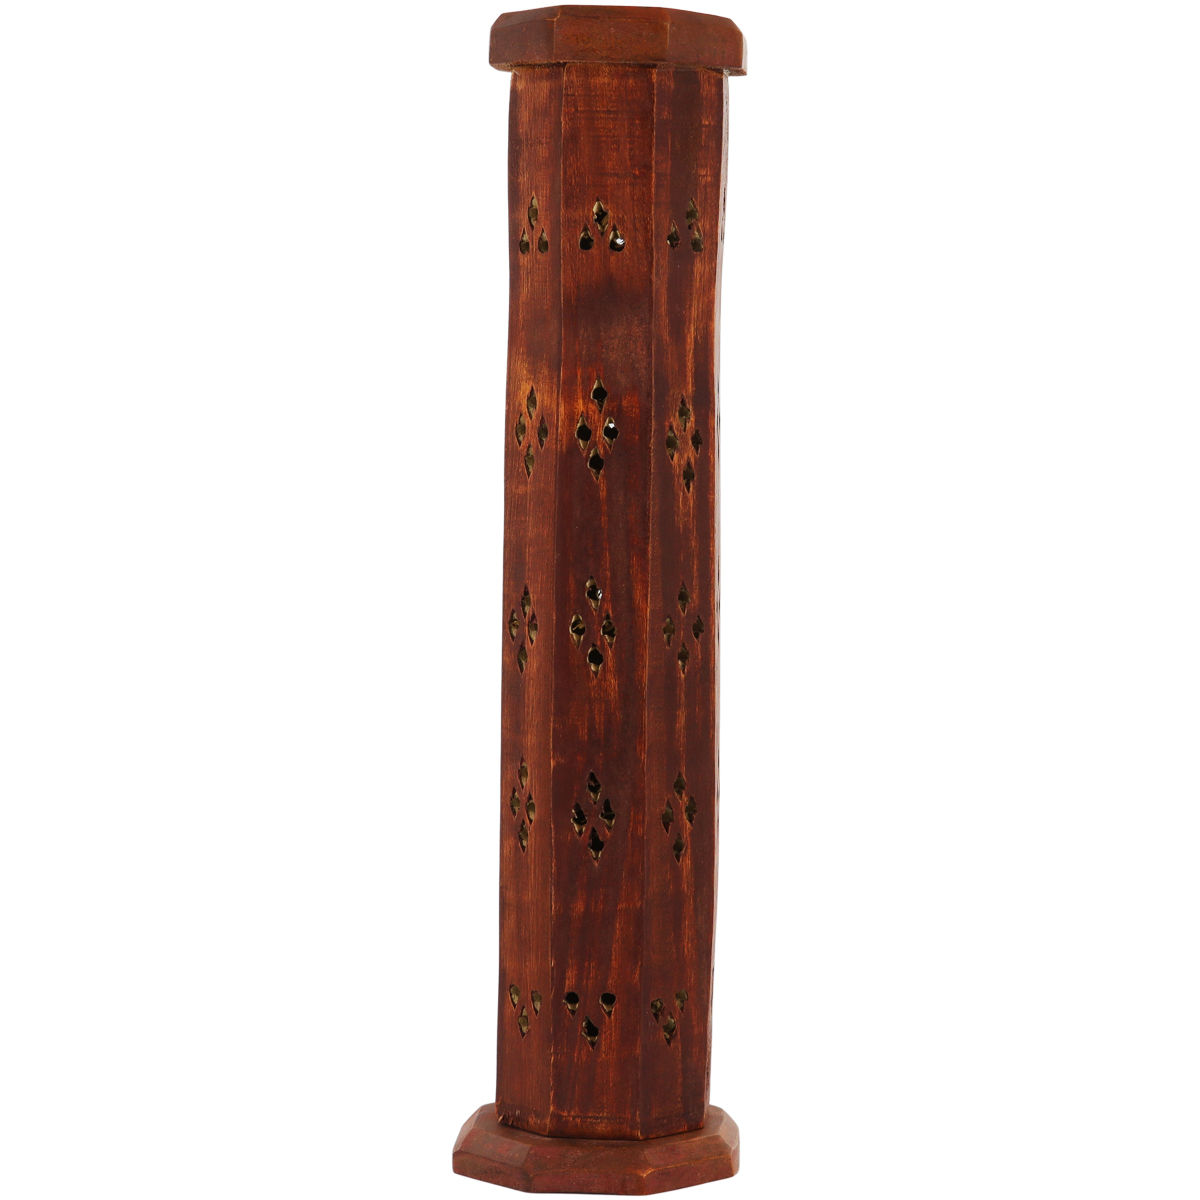 Brûle encens tour octogonale évidée en bois pour bâtonnets ou cônes, hauteur 30 cm, Ø 6 cm.